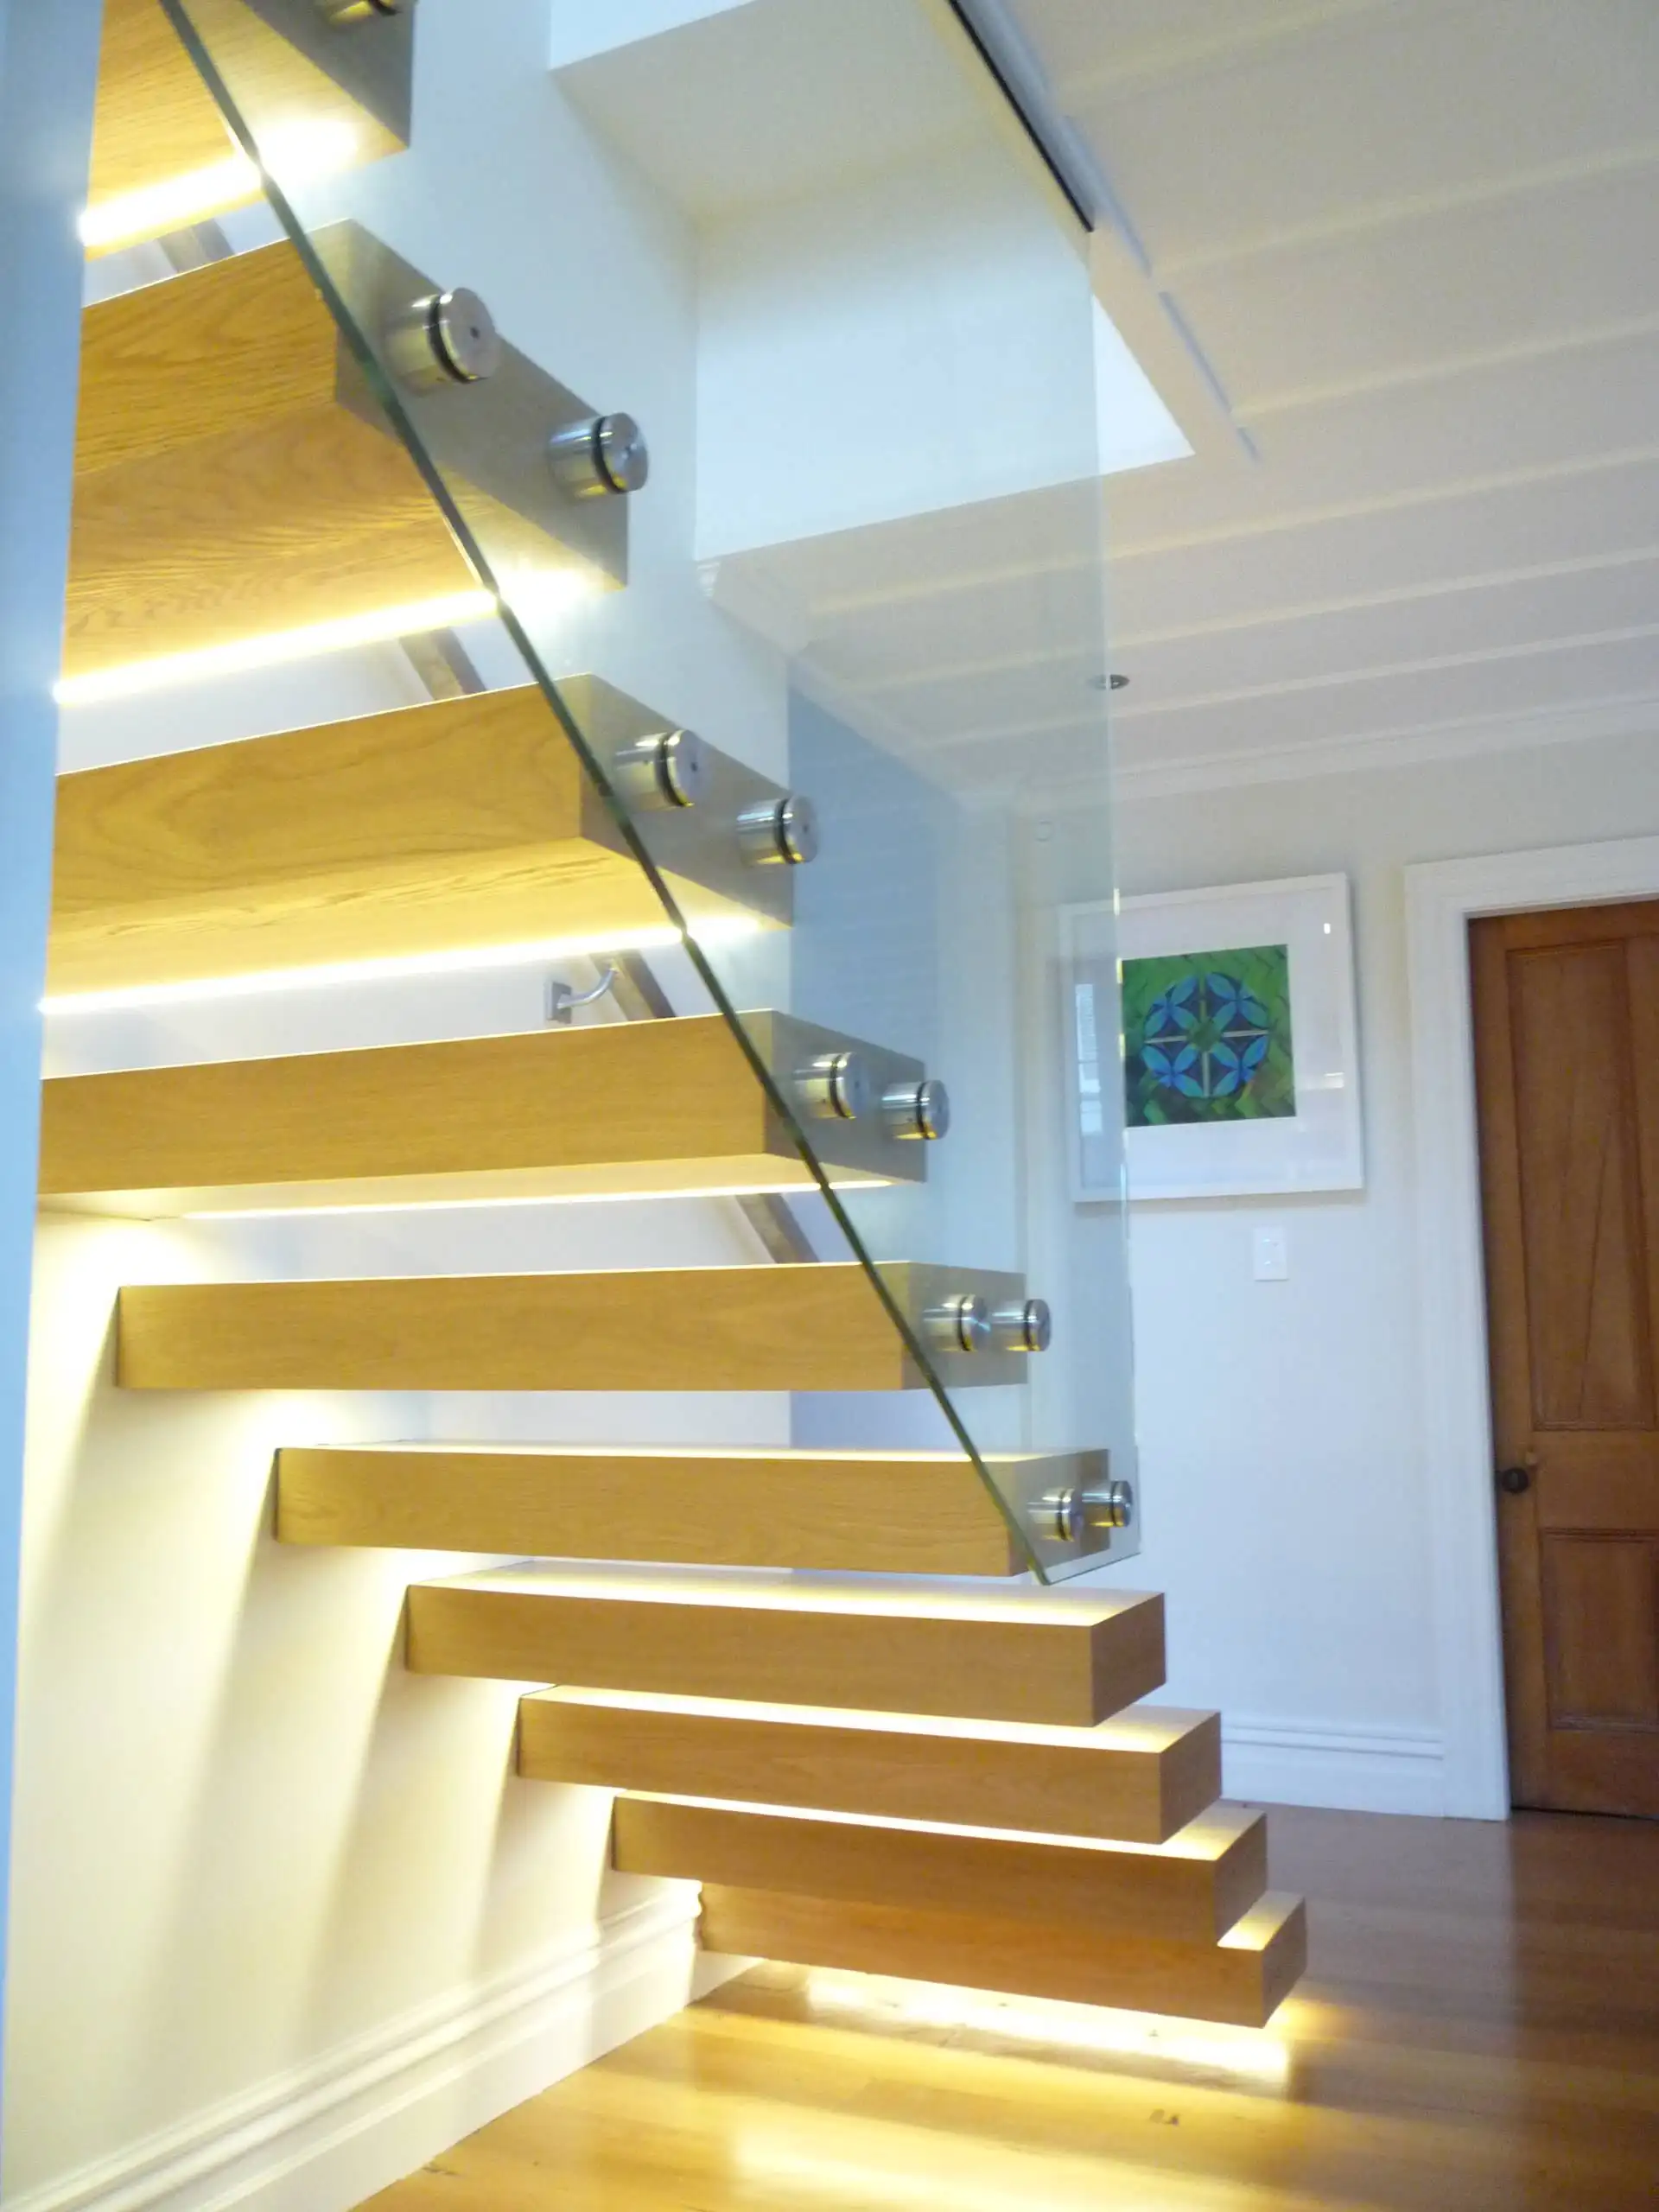 أمريكا الشمالية البناء رمز الحديثة درج العائمة مستقيم الدرج الداخلية الدرج مع الخشب فقي و درابزين مصنوع من الزجاج